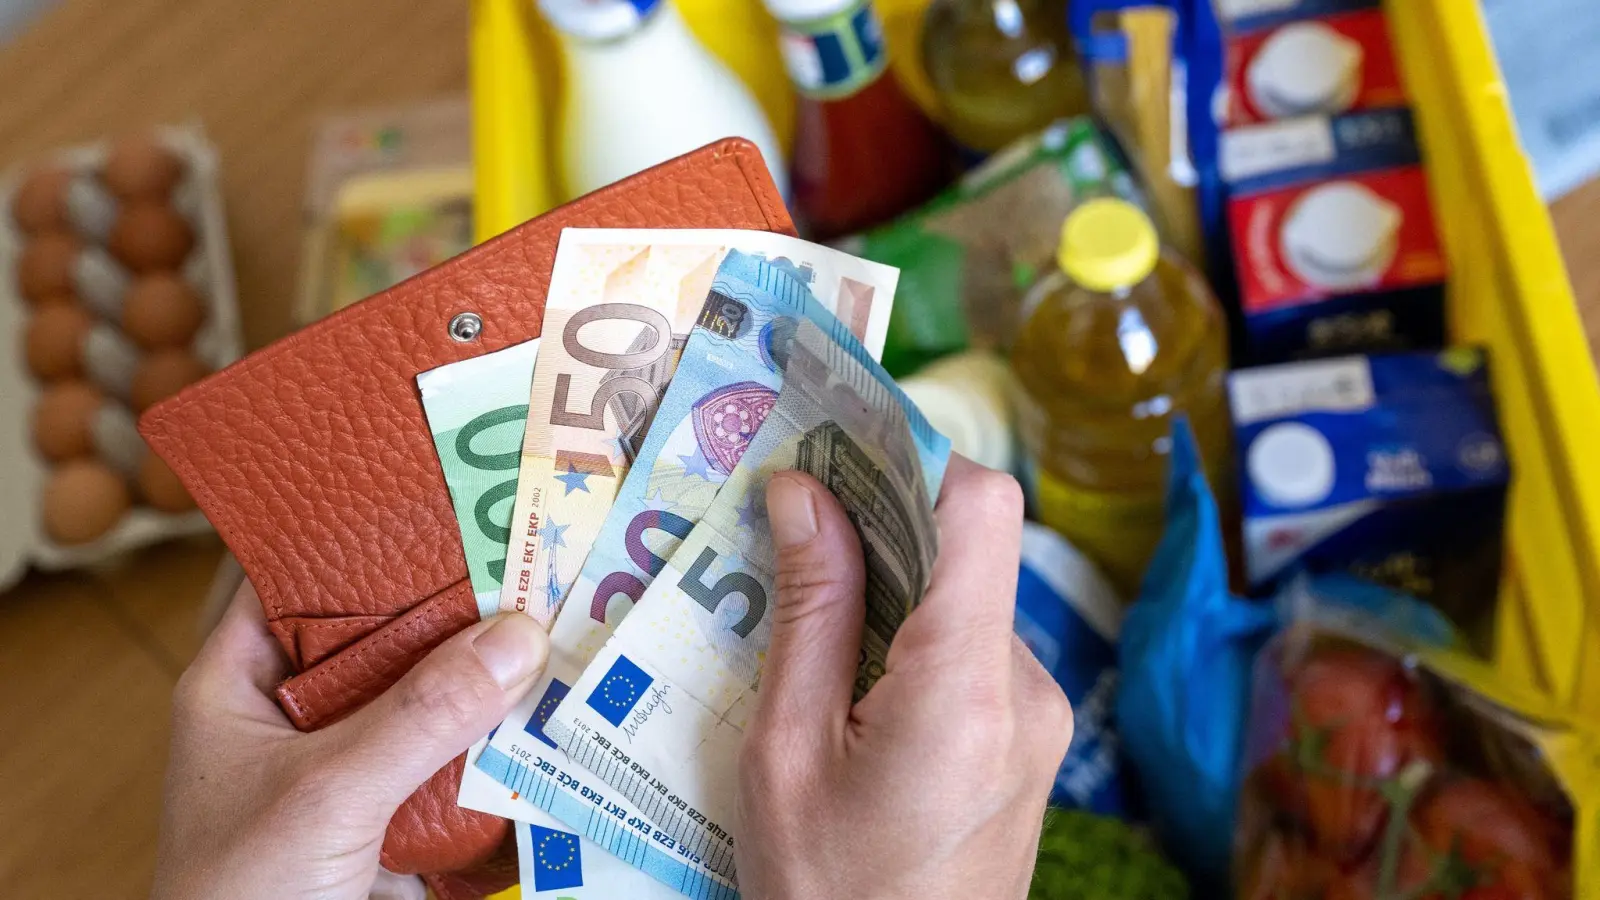 Eine Einkaufskiste mit Lebensmitteln steht auf einem Küchentisch, während eine Frau Euro-Banknoten in den Händen hält. (Foto: Hendrik Schmidt/dpa/Symbolbild)